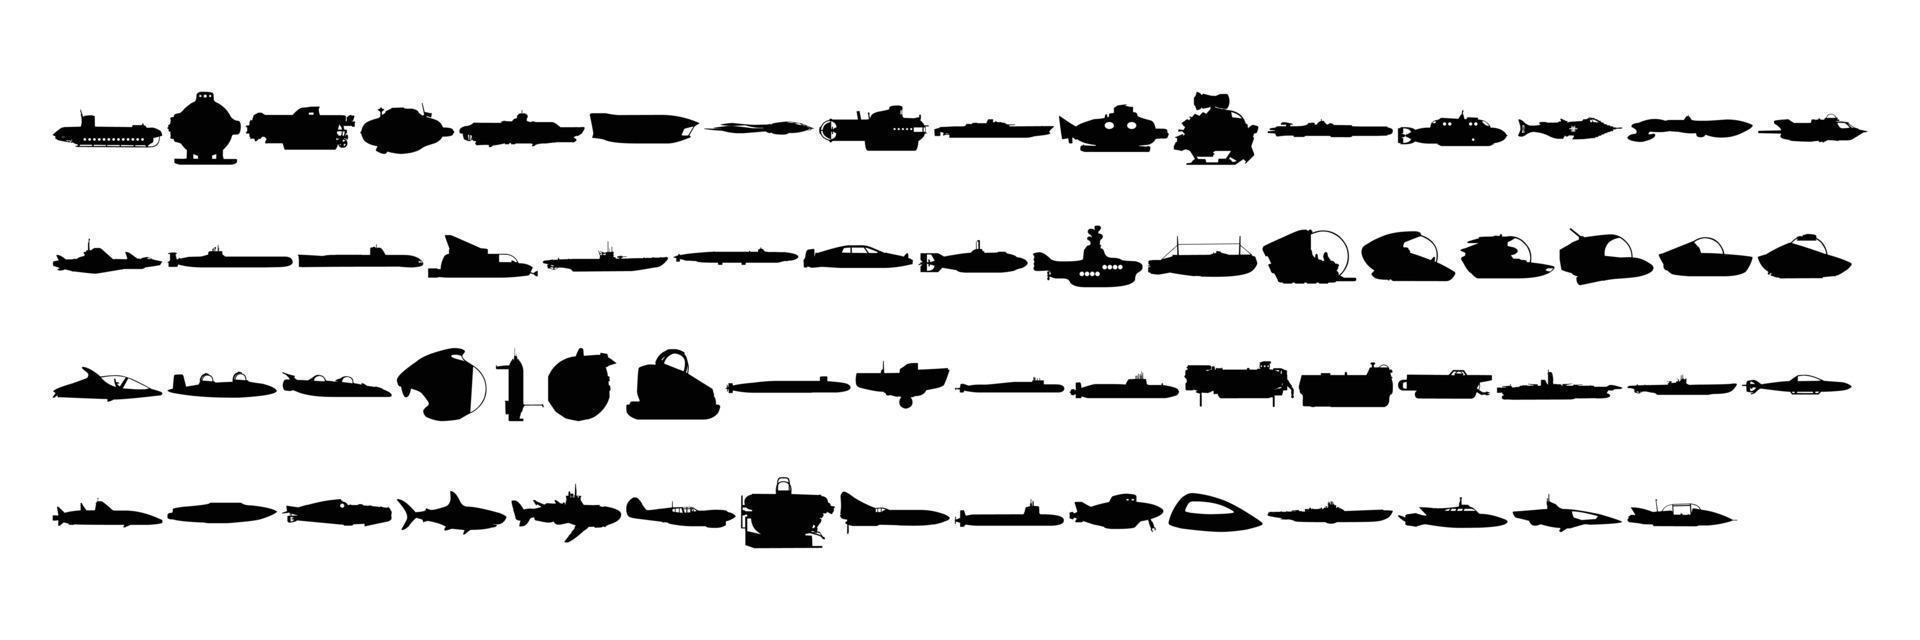 en samling av silhuetter av fartyg, båtar och Övrig marin fordon för ikoner på en vit bakgrund vektor